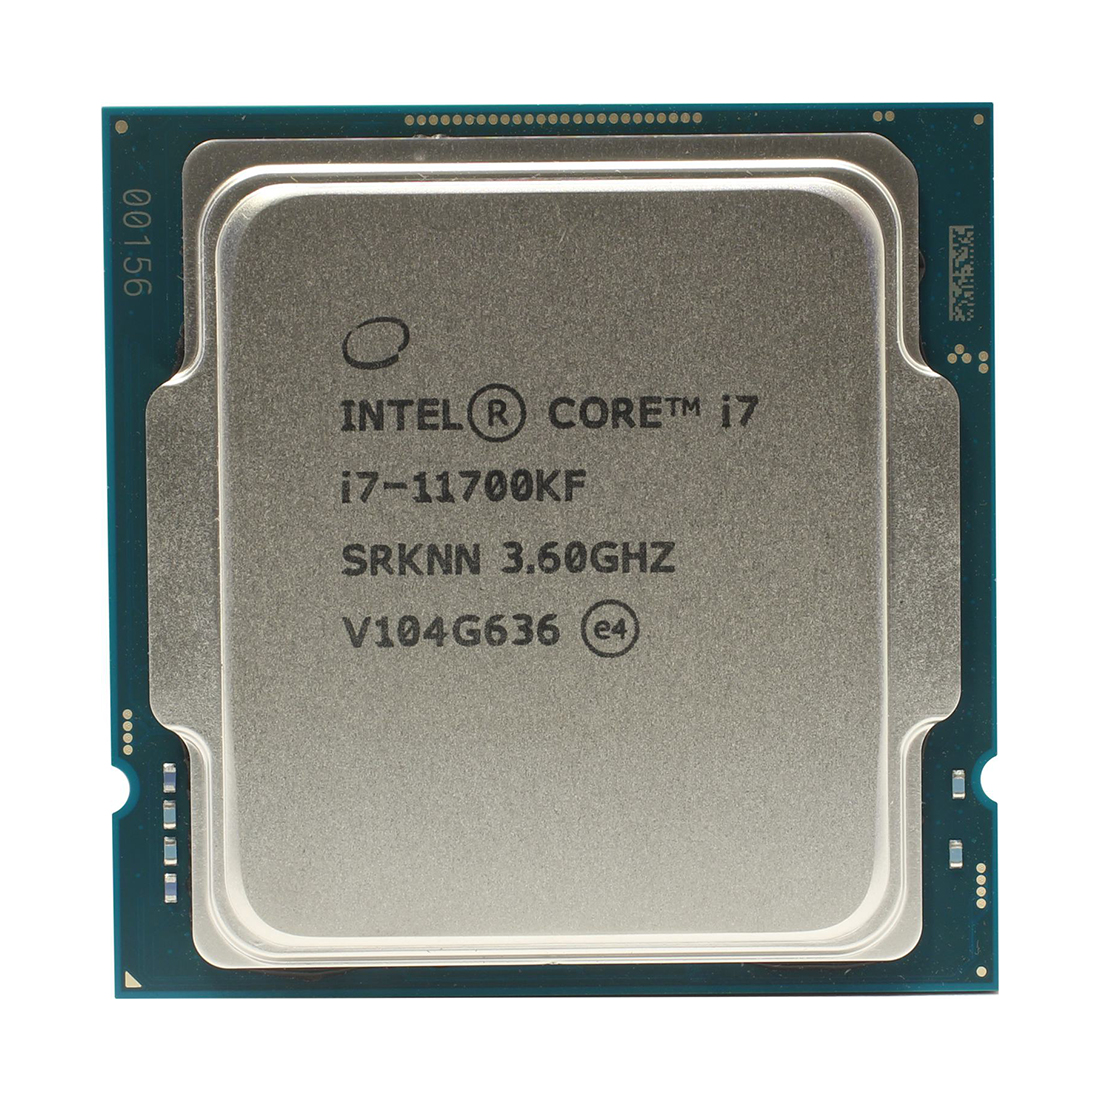 Процессор, Intel, i7-11700KF LGA1200, оем, 16M, 3.60 GHz, 8/16 Core Rocket Lake, 125 Вт, без встроенной видеокарты